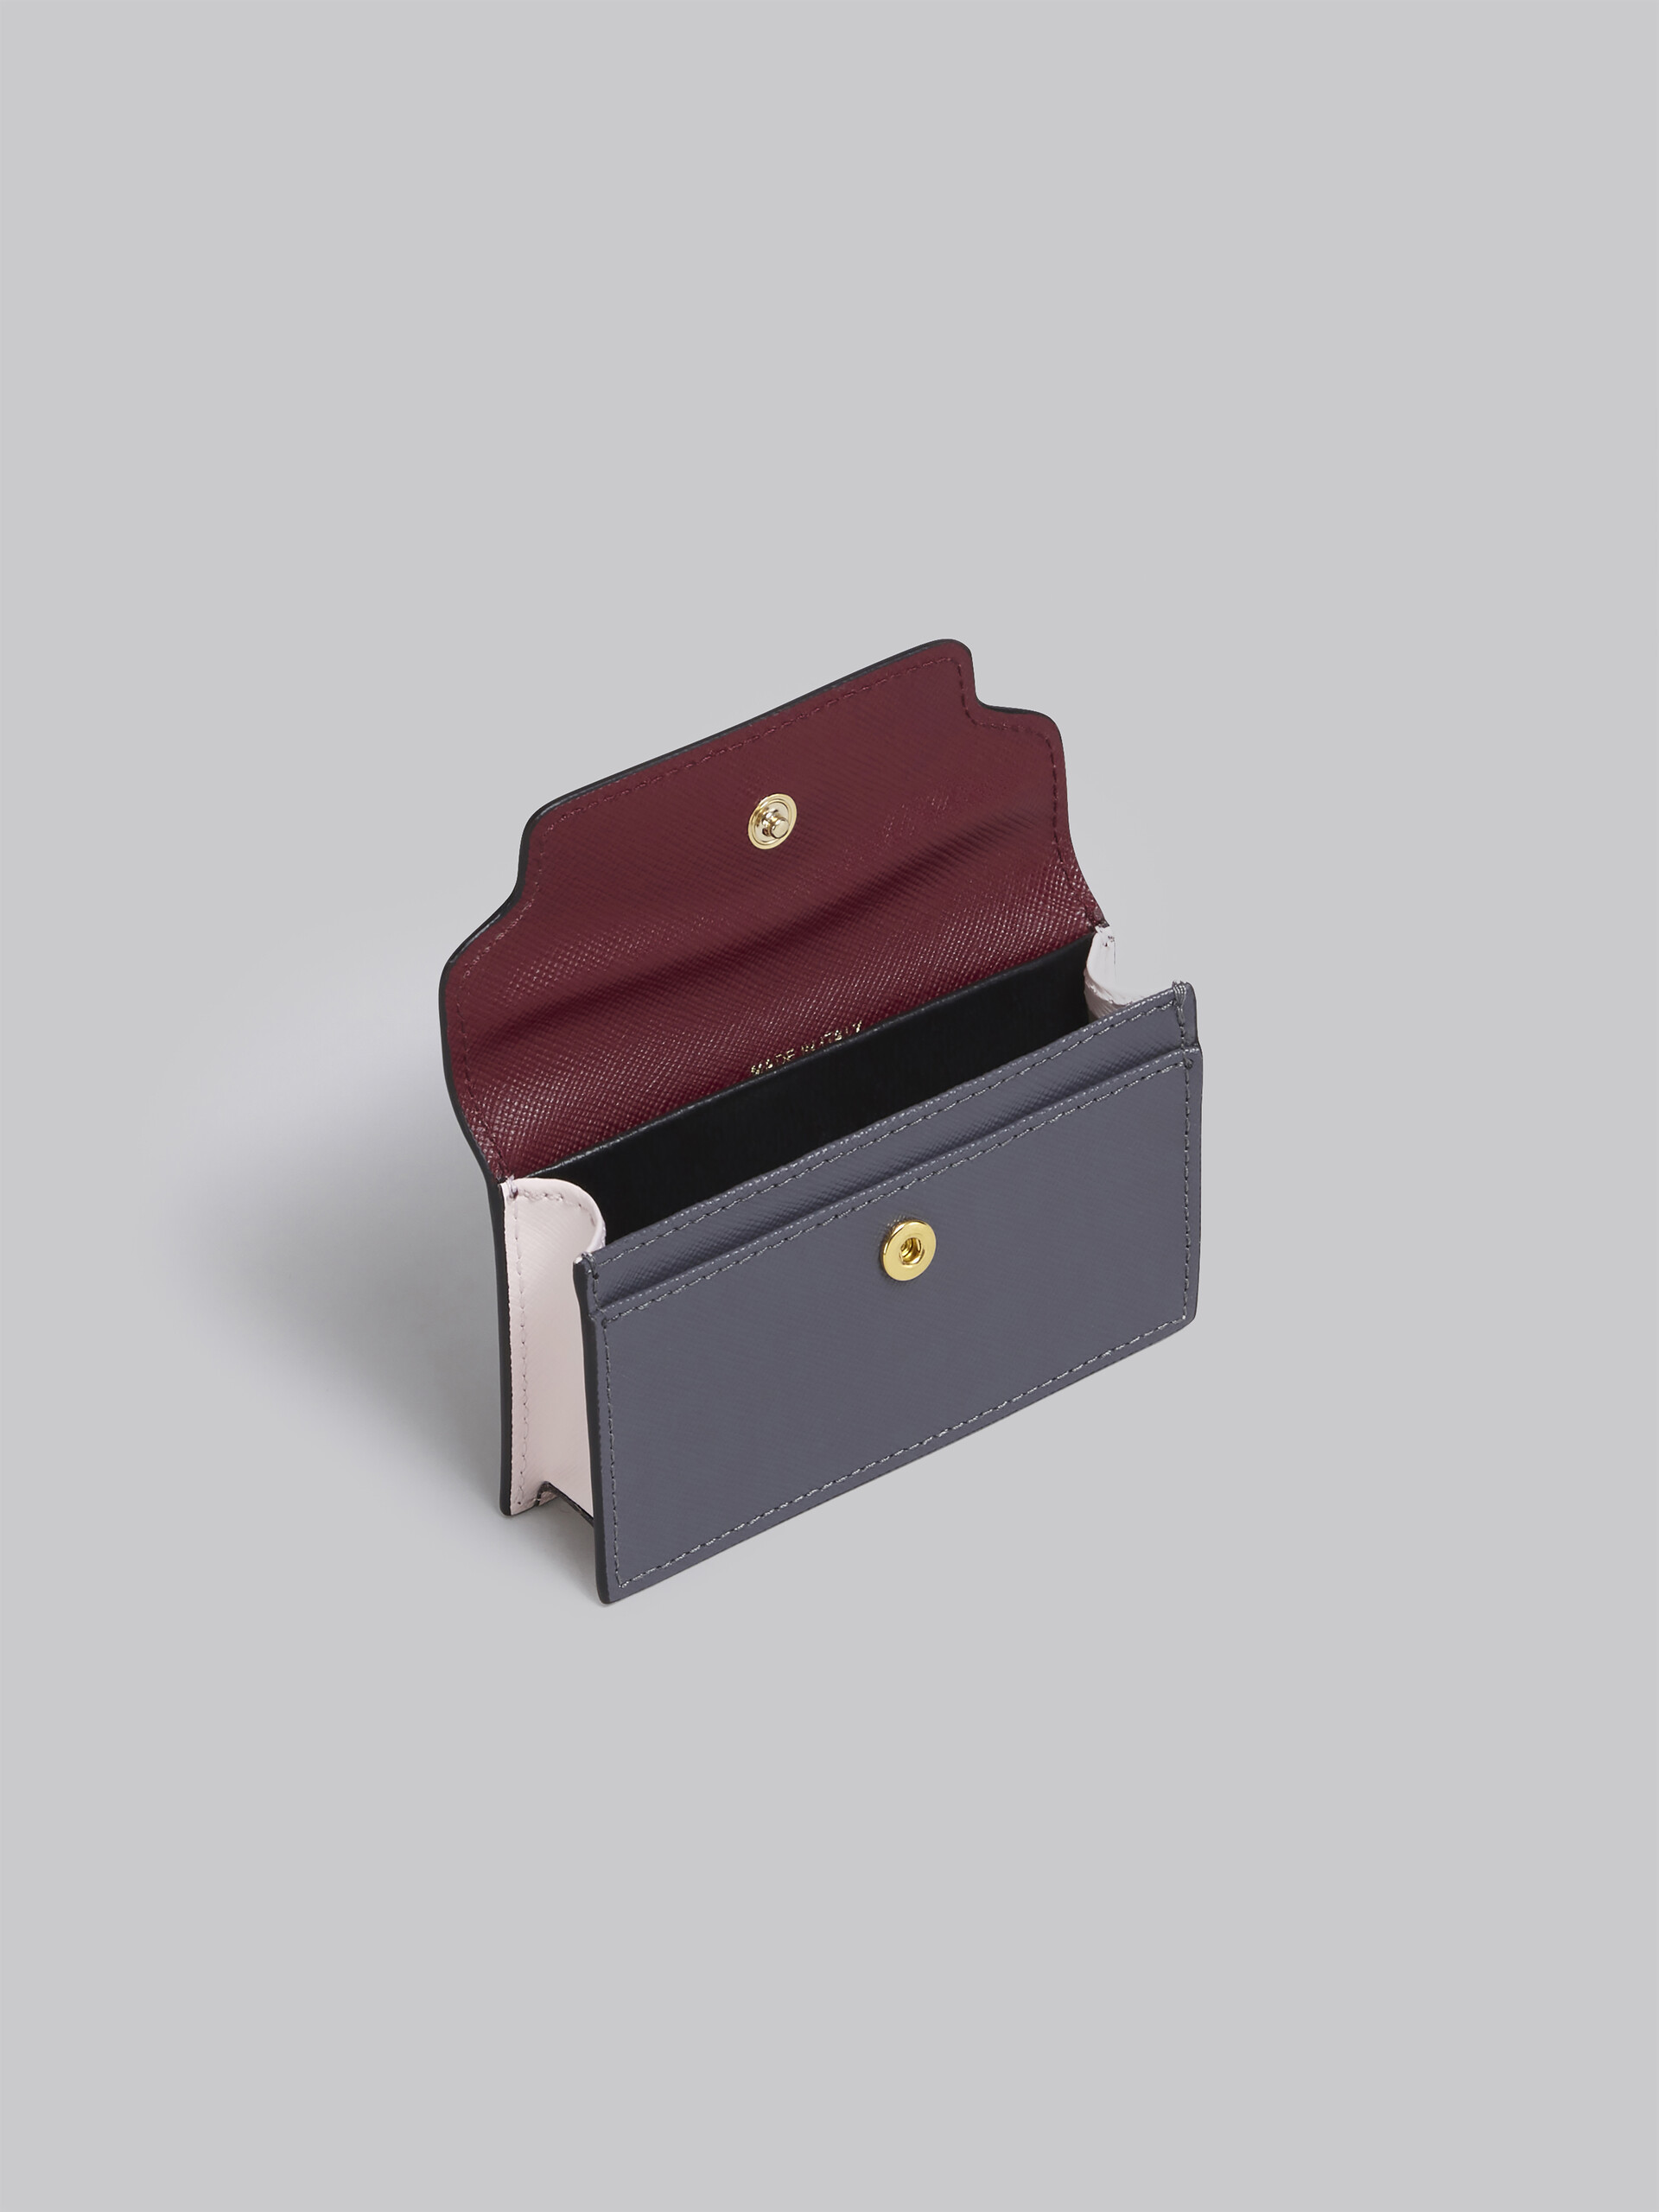 Porte-cartes en cuir saffiano rouge, rose et gris - Portefeuilles - Image 2